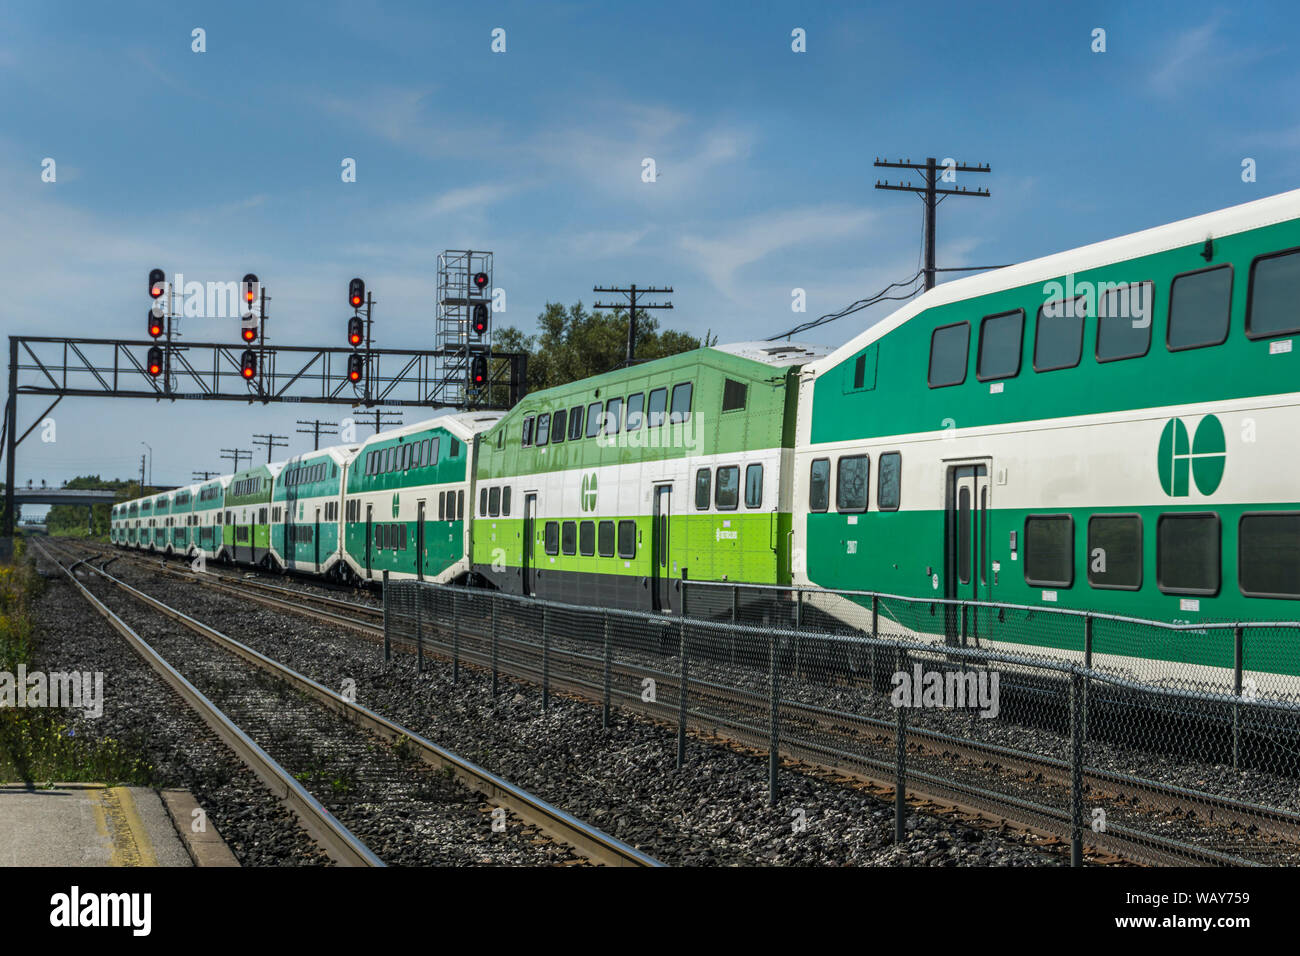 Toronto, Canada - ANDARE treno che ferma in una stazione ferroviaria Foto Stock